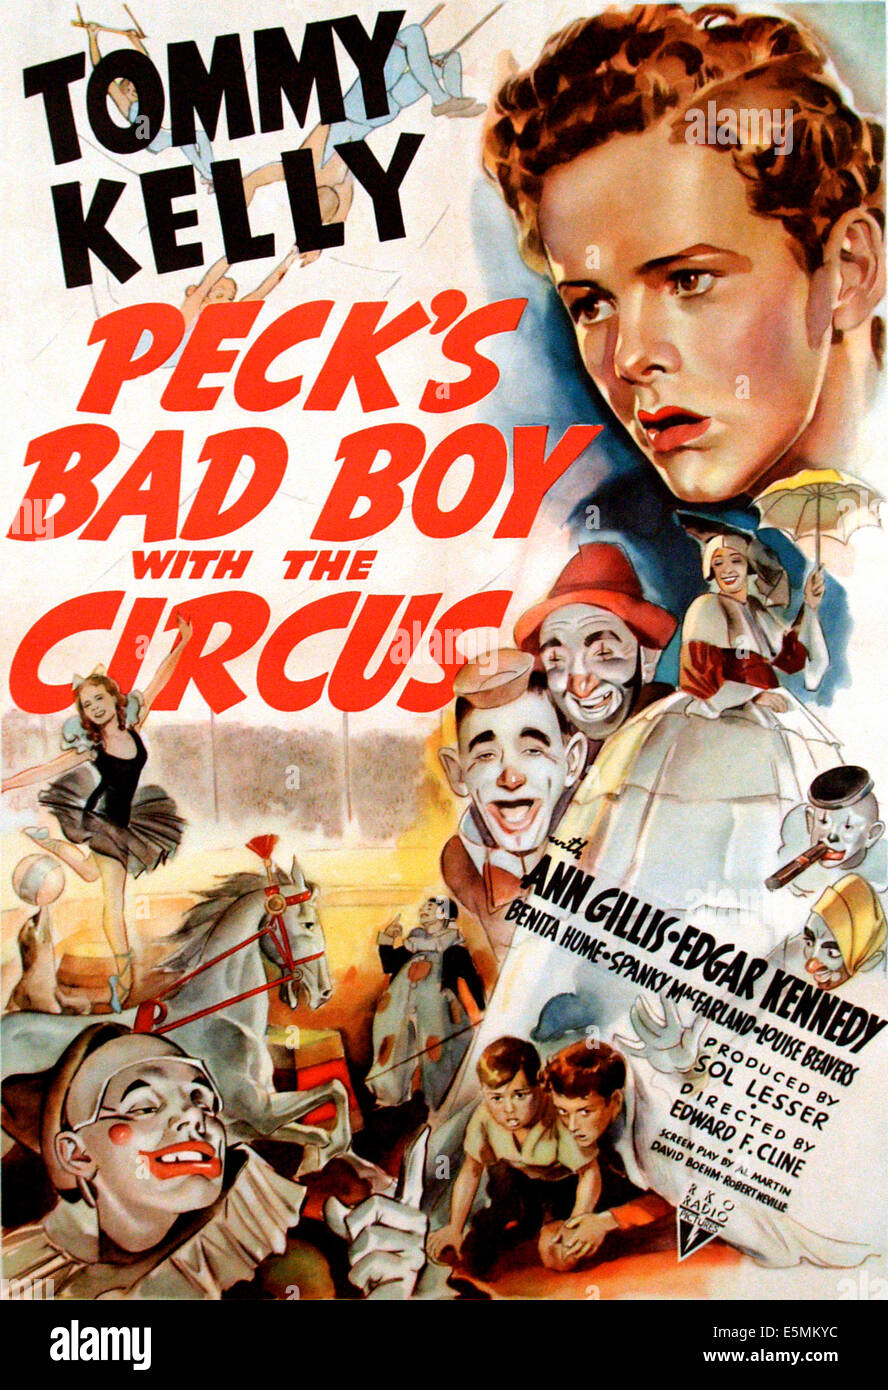 PECK'S BAD BOY AVEC LE CIRQUE, Tommy Kelly, (en haut à droite), 1938 Banque D'Images